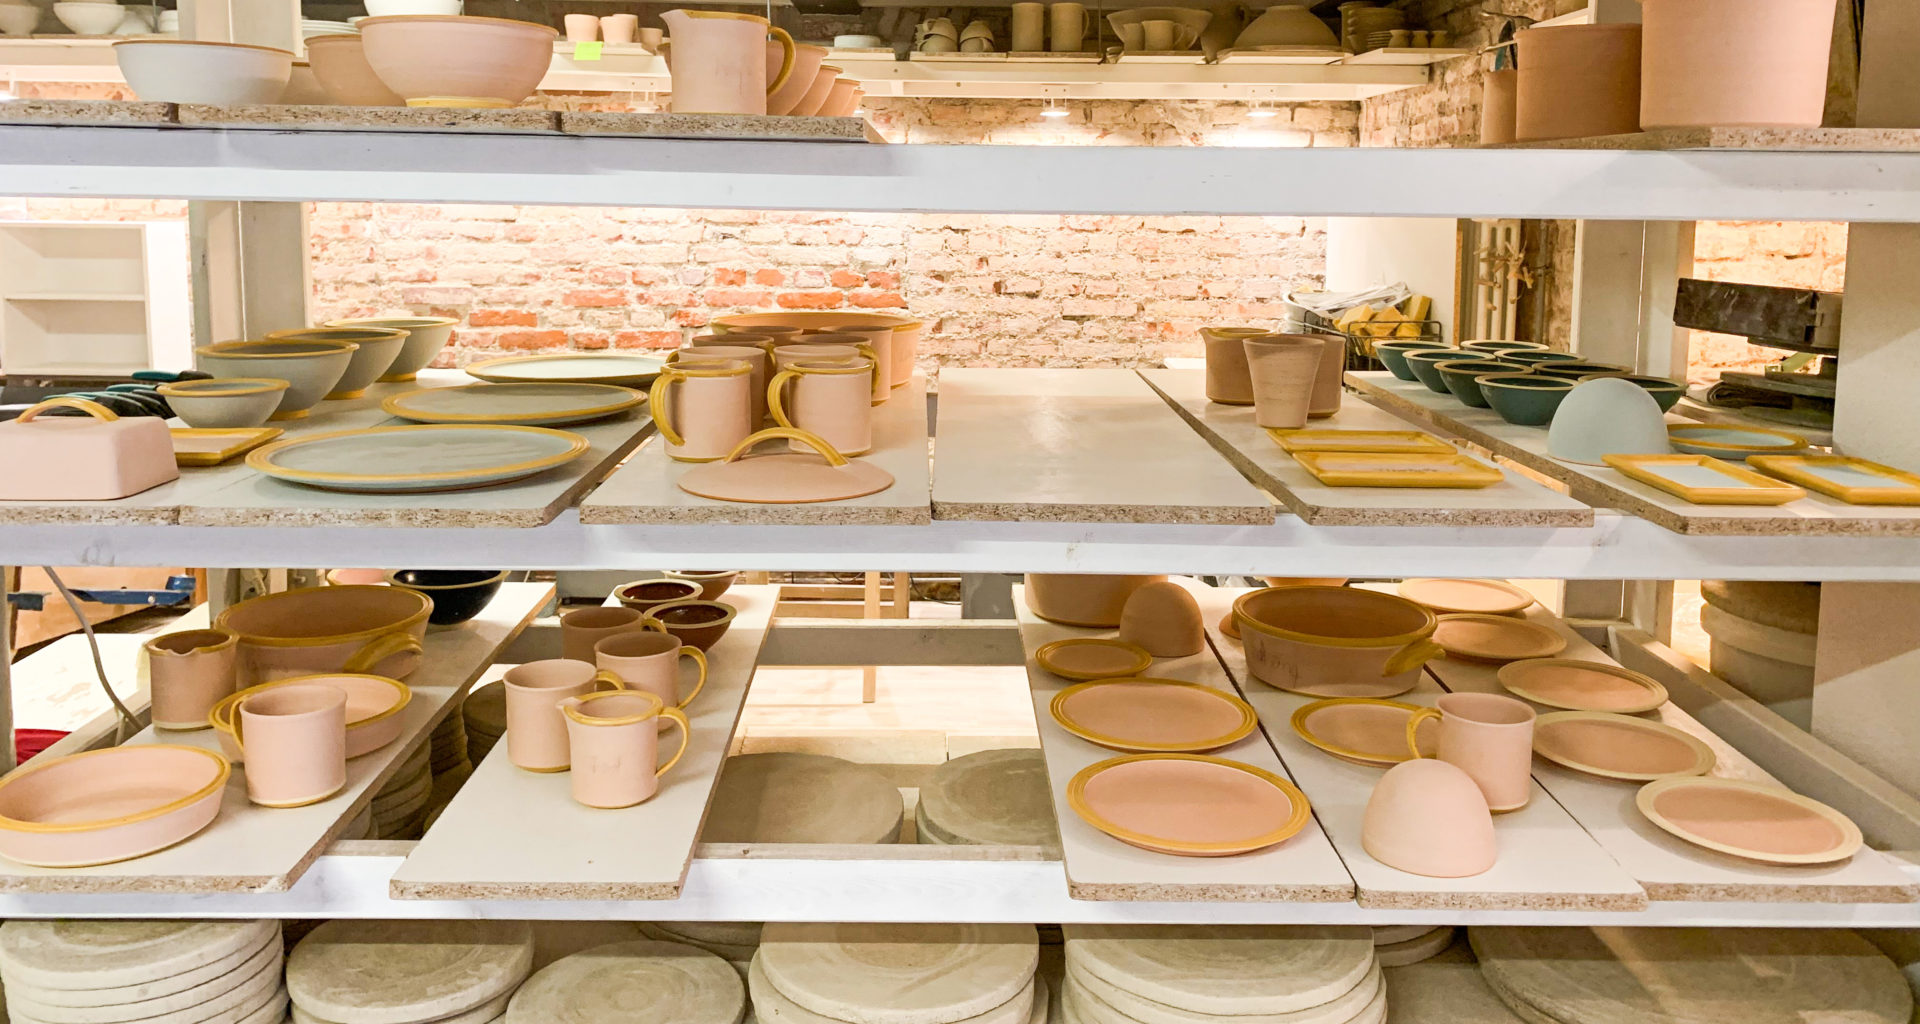 Zahlreiche bemalte Tassen, Teller und andere Keramik in einem Regal zum trocknen.